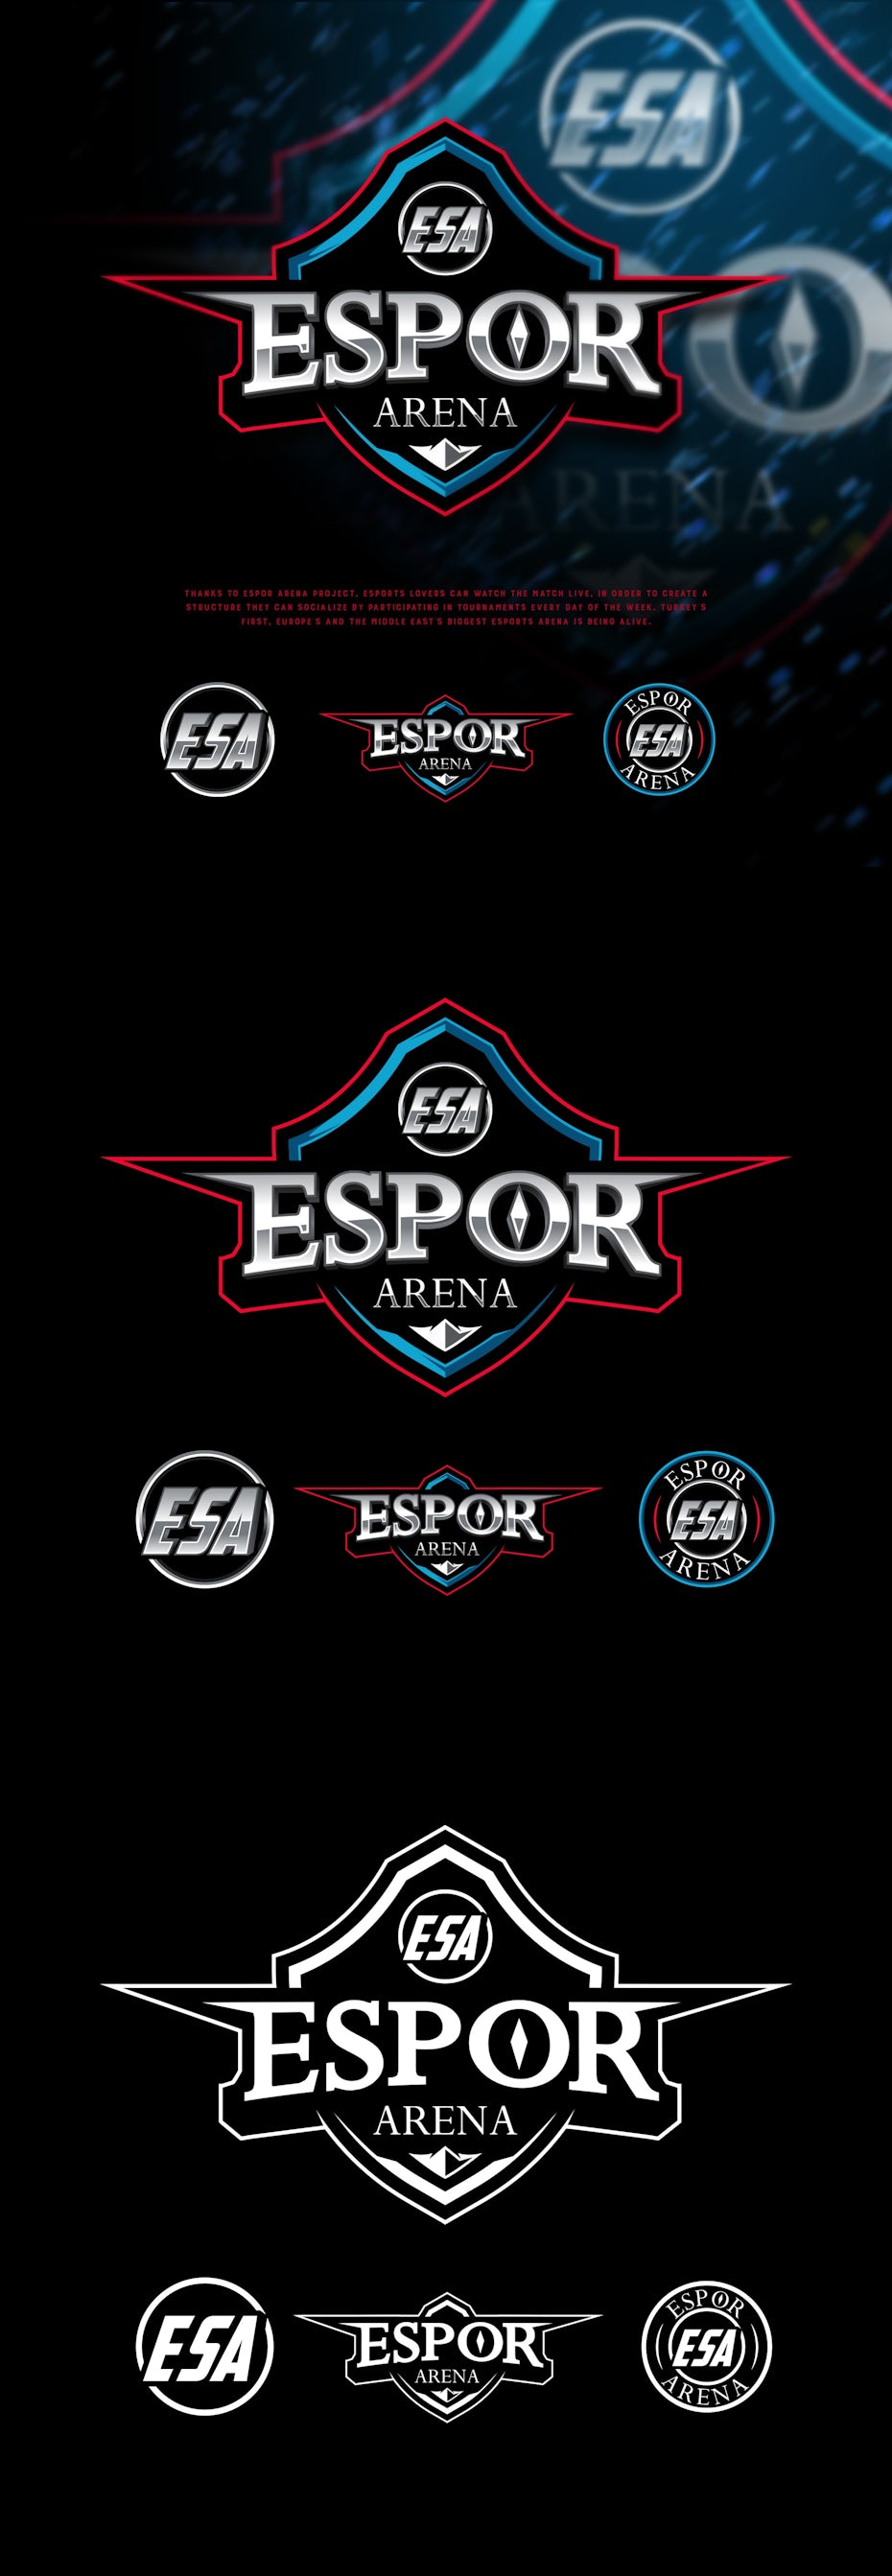 Espor Arena Project logo